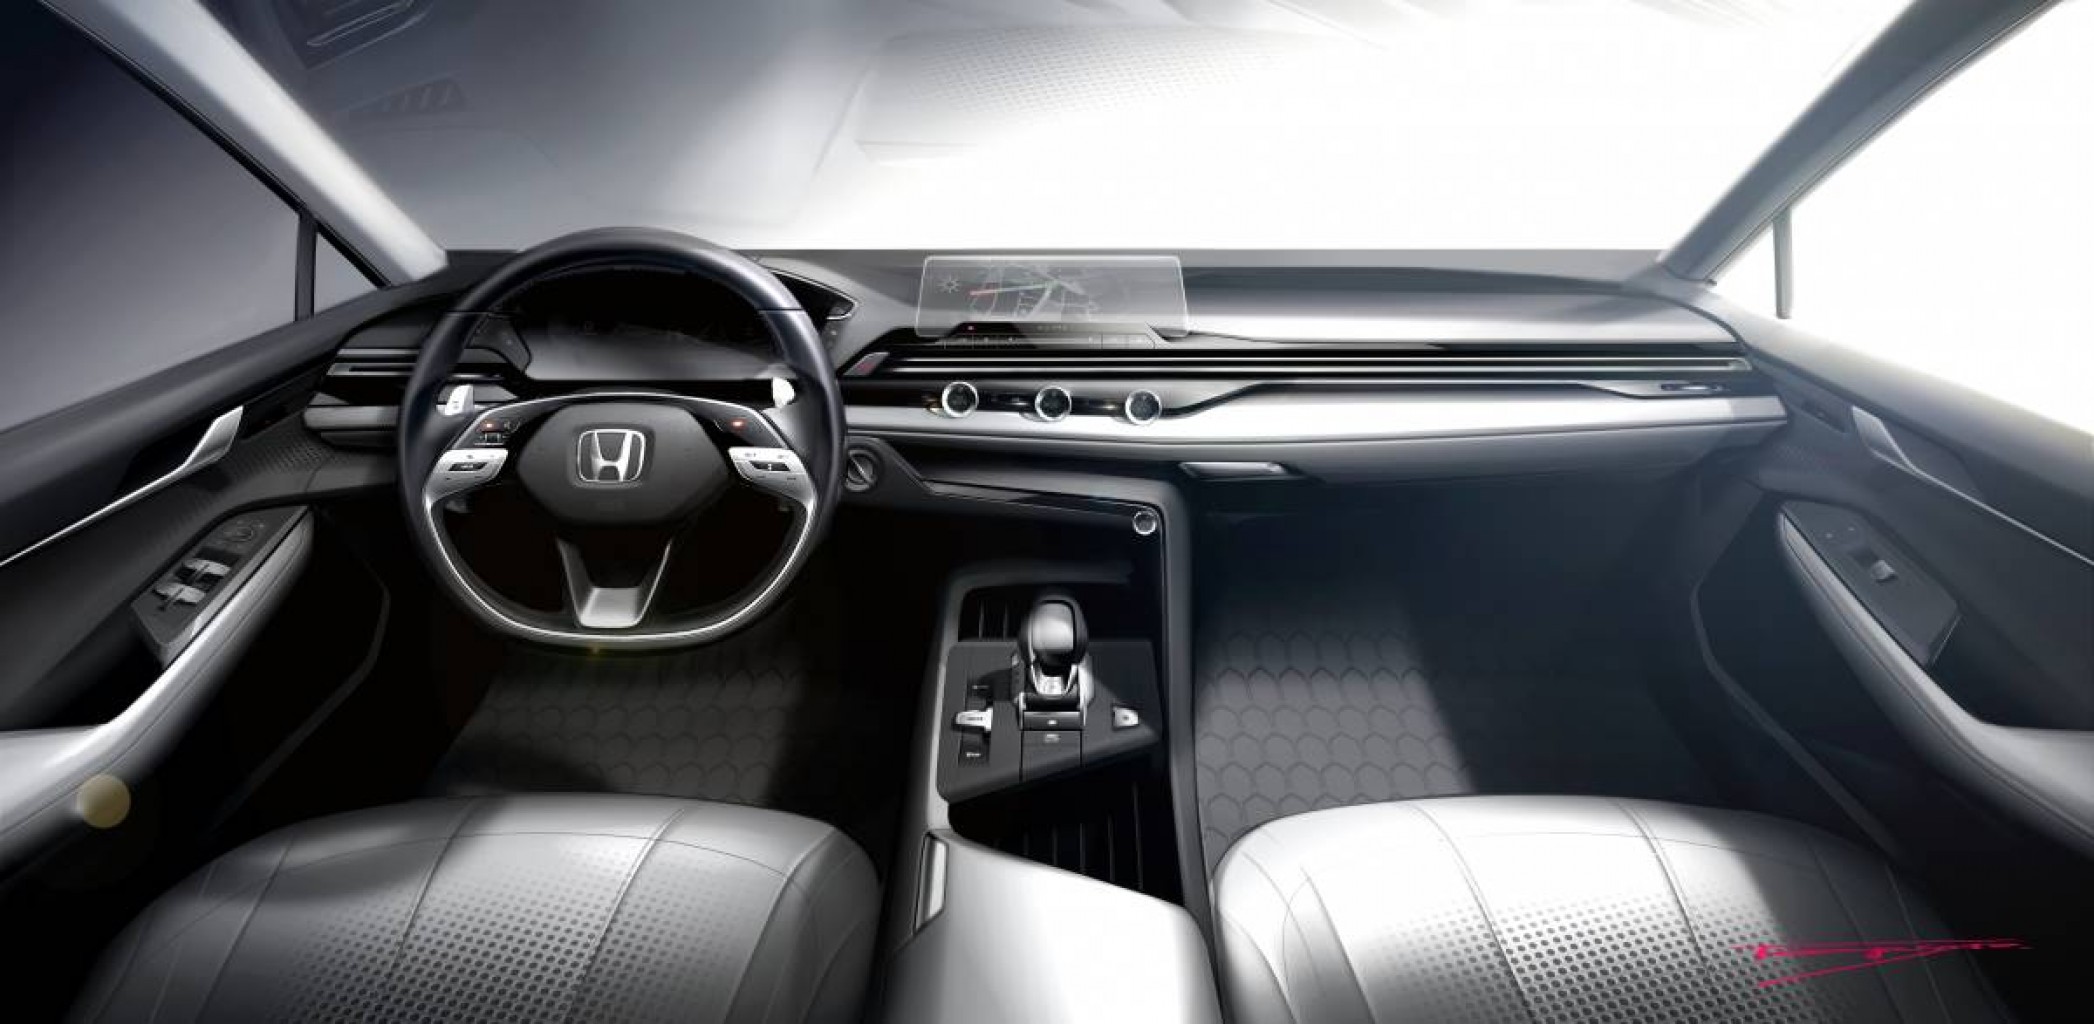 Honda muestra su nueva filosofía de diseño de interiores